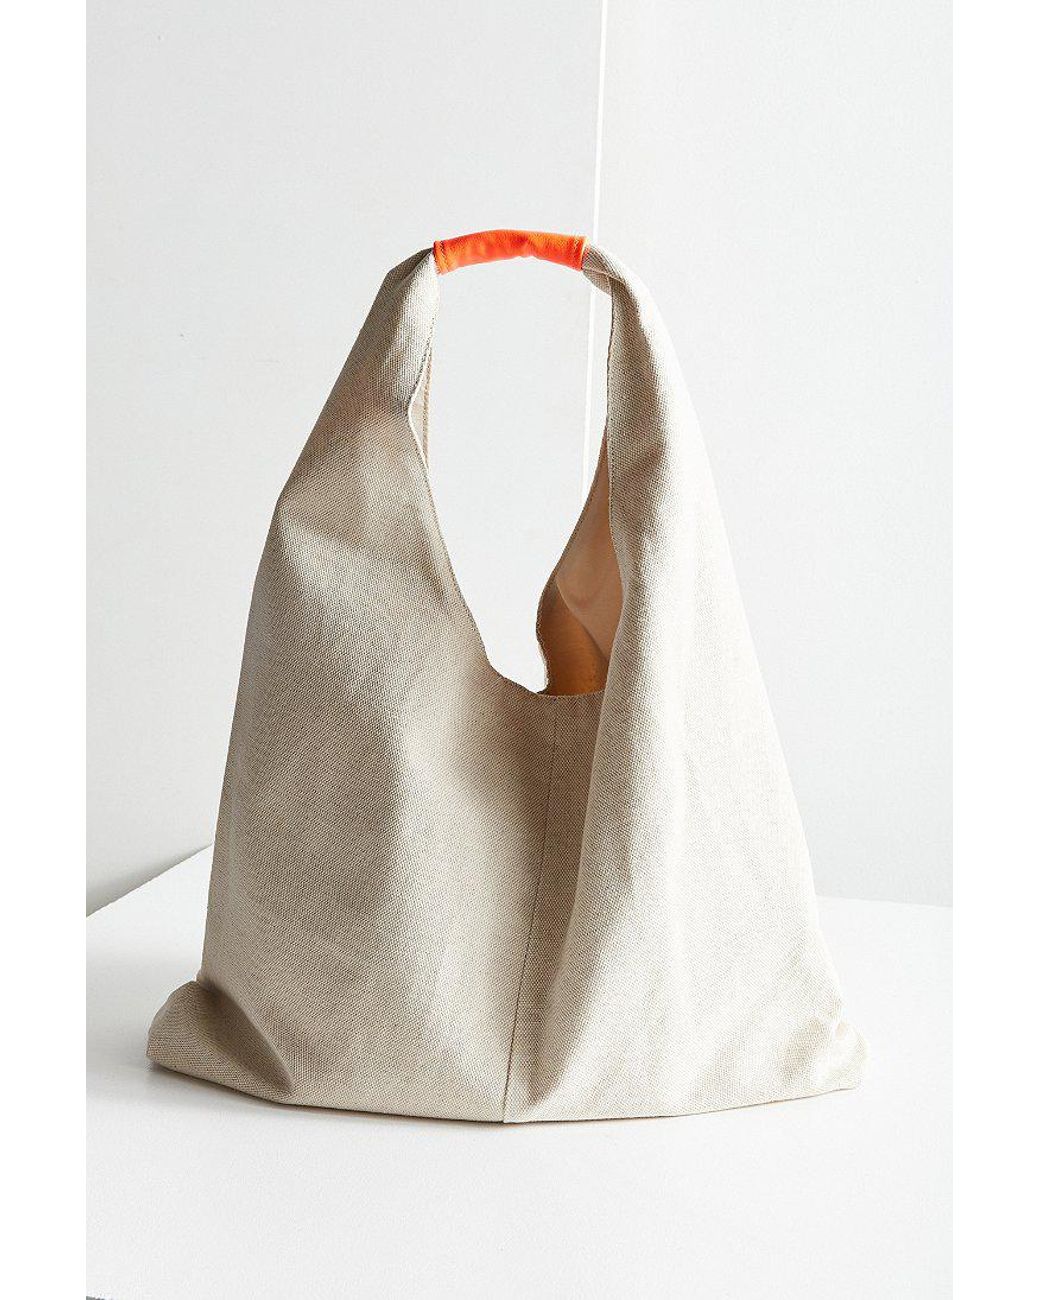 Generous Leather Shopping Bag – Sunshine Barossa Australia